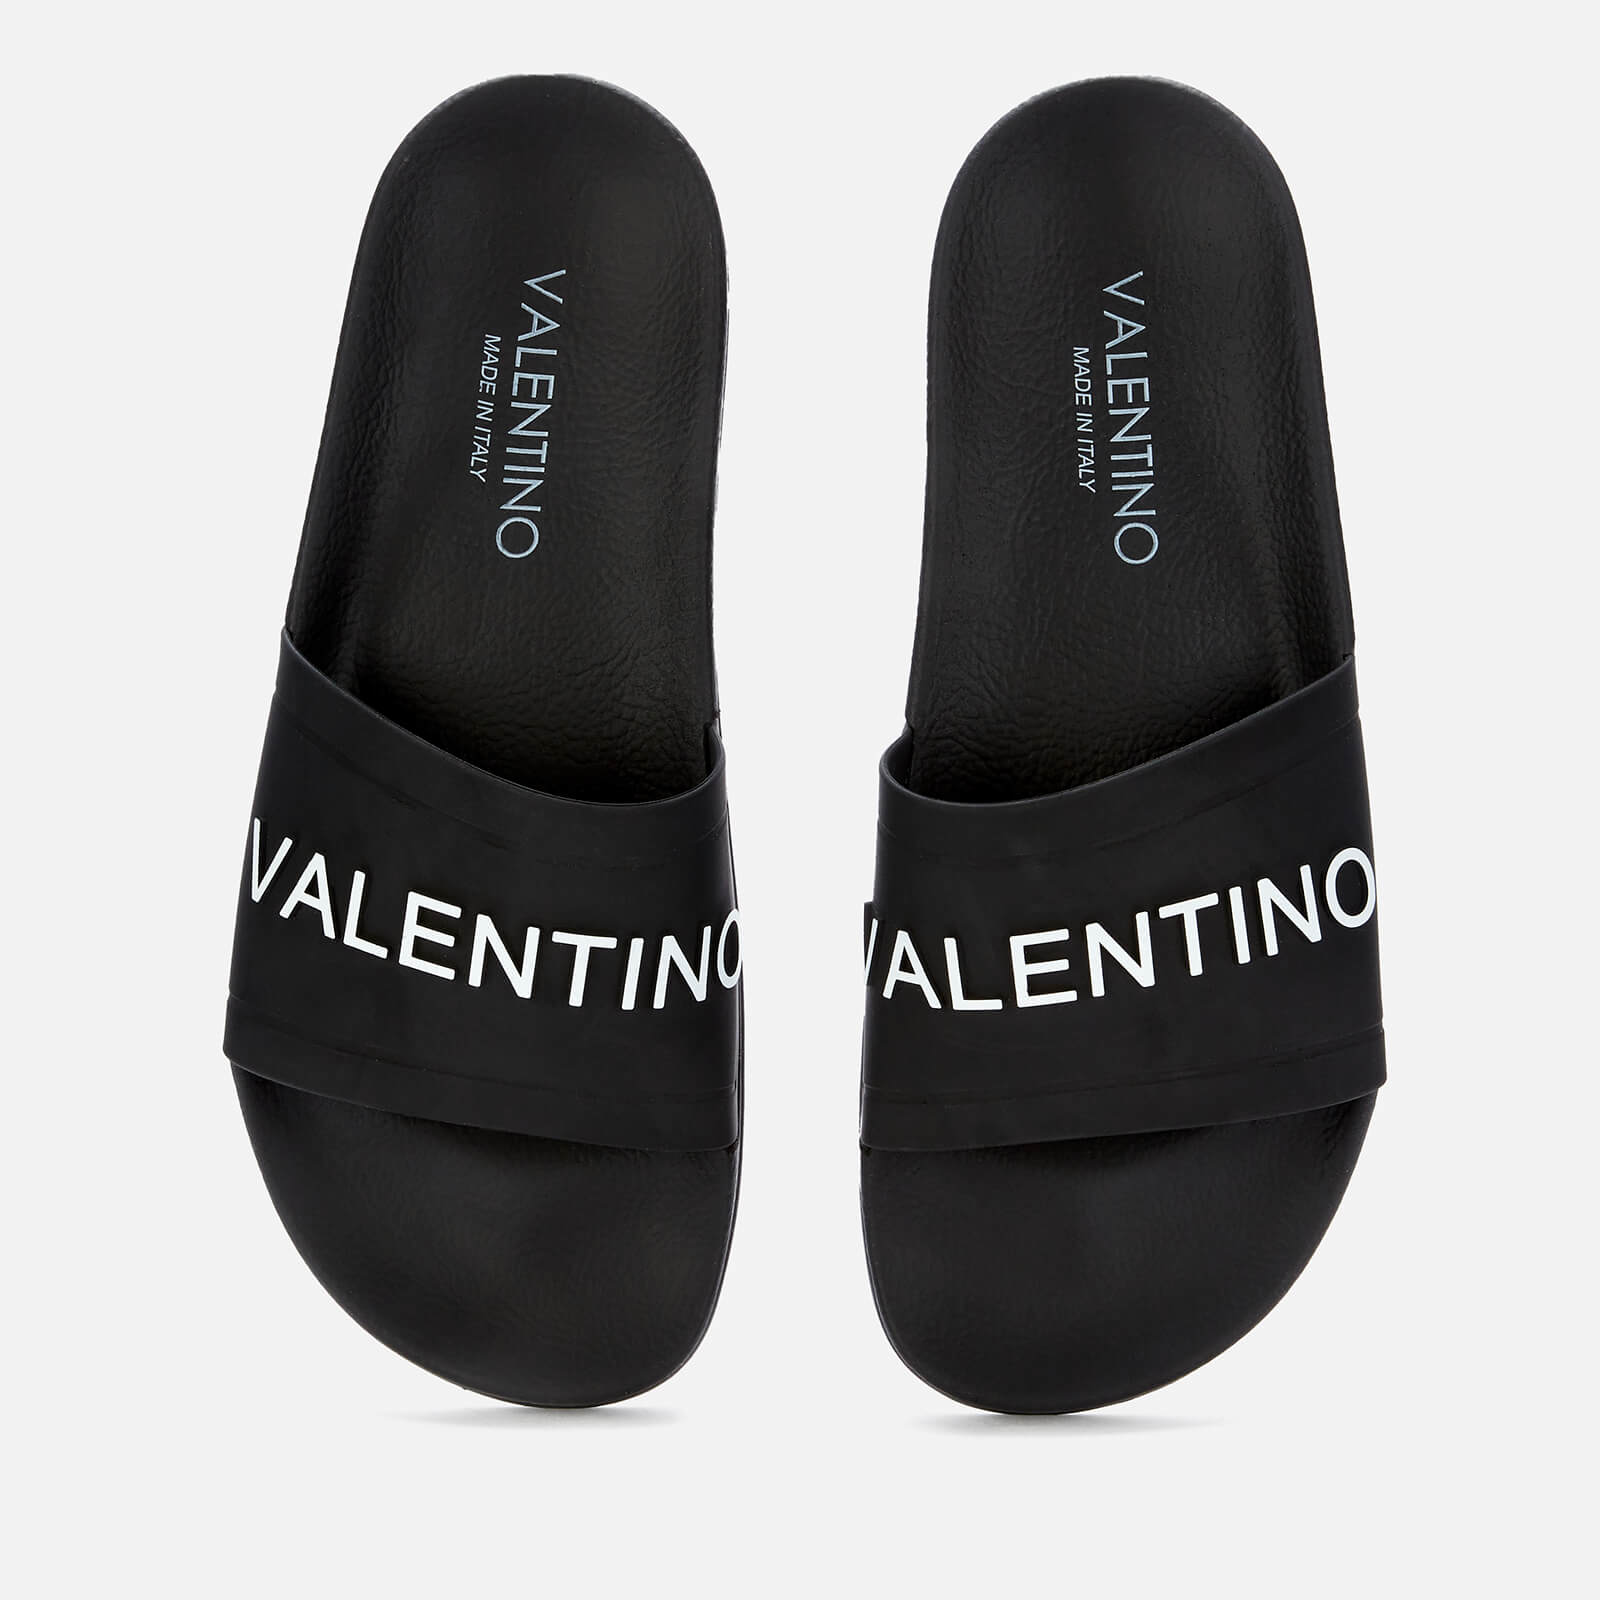 Valentino Shoes men's slide sandals - black - uk 7